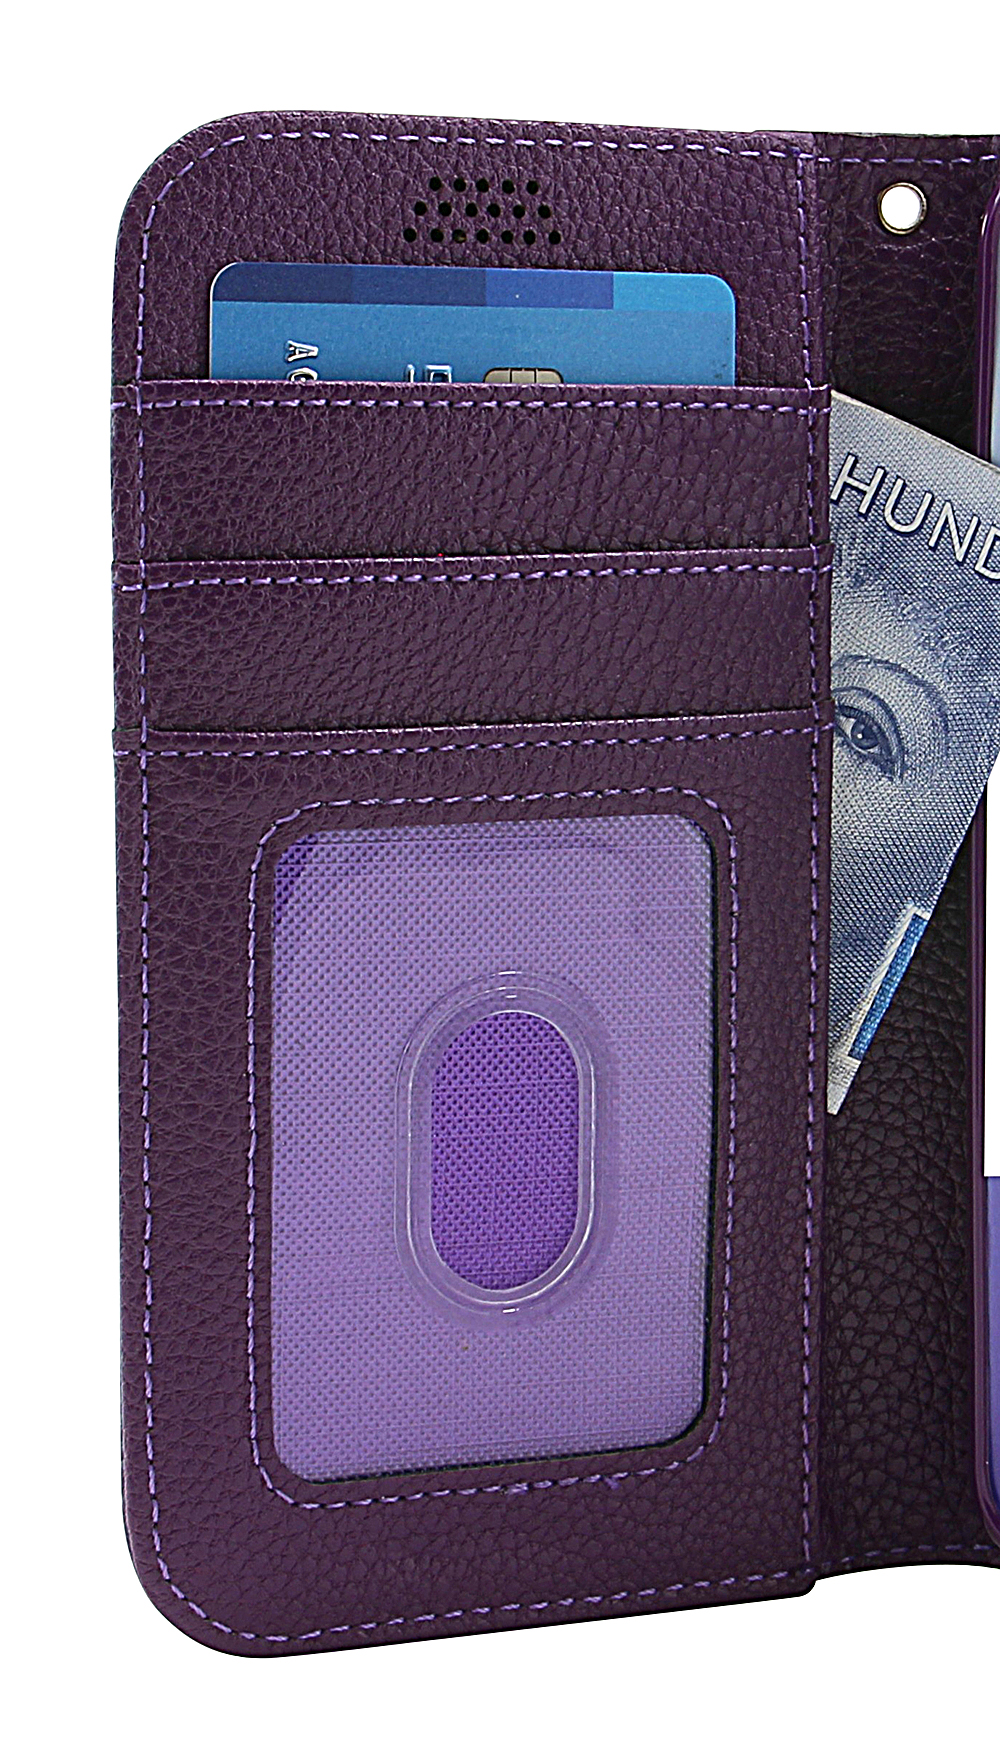 billigamobilskydd.seNew Standcase Wallet OnePlus 6T